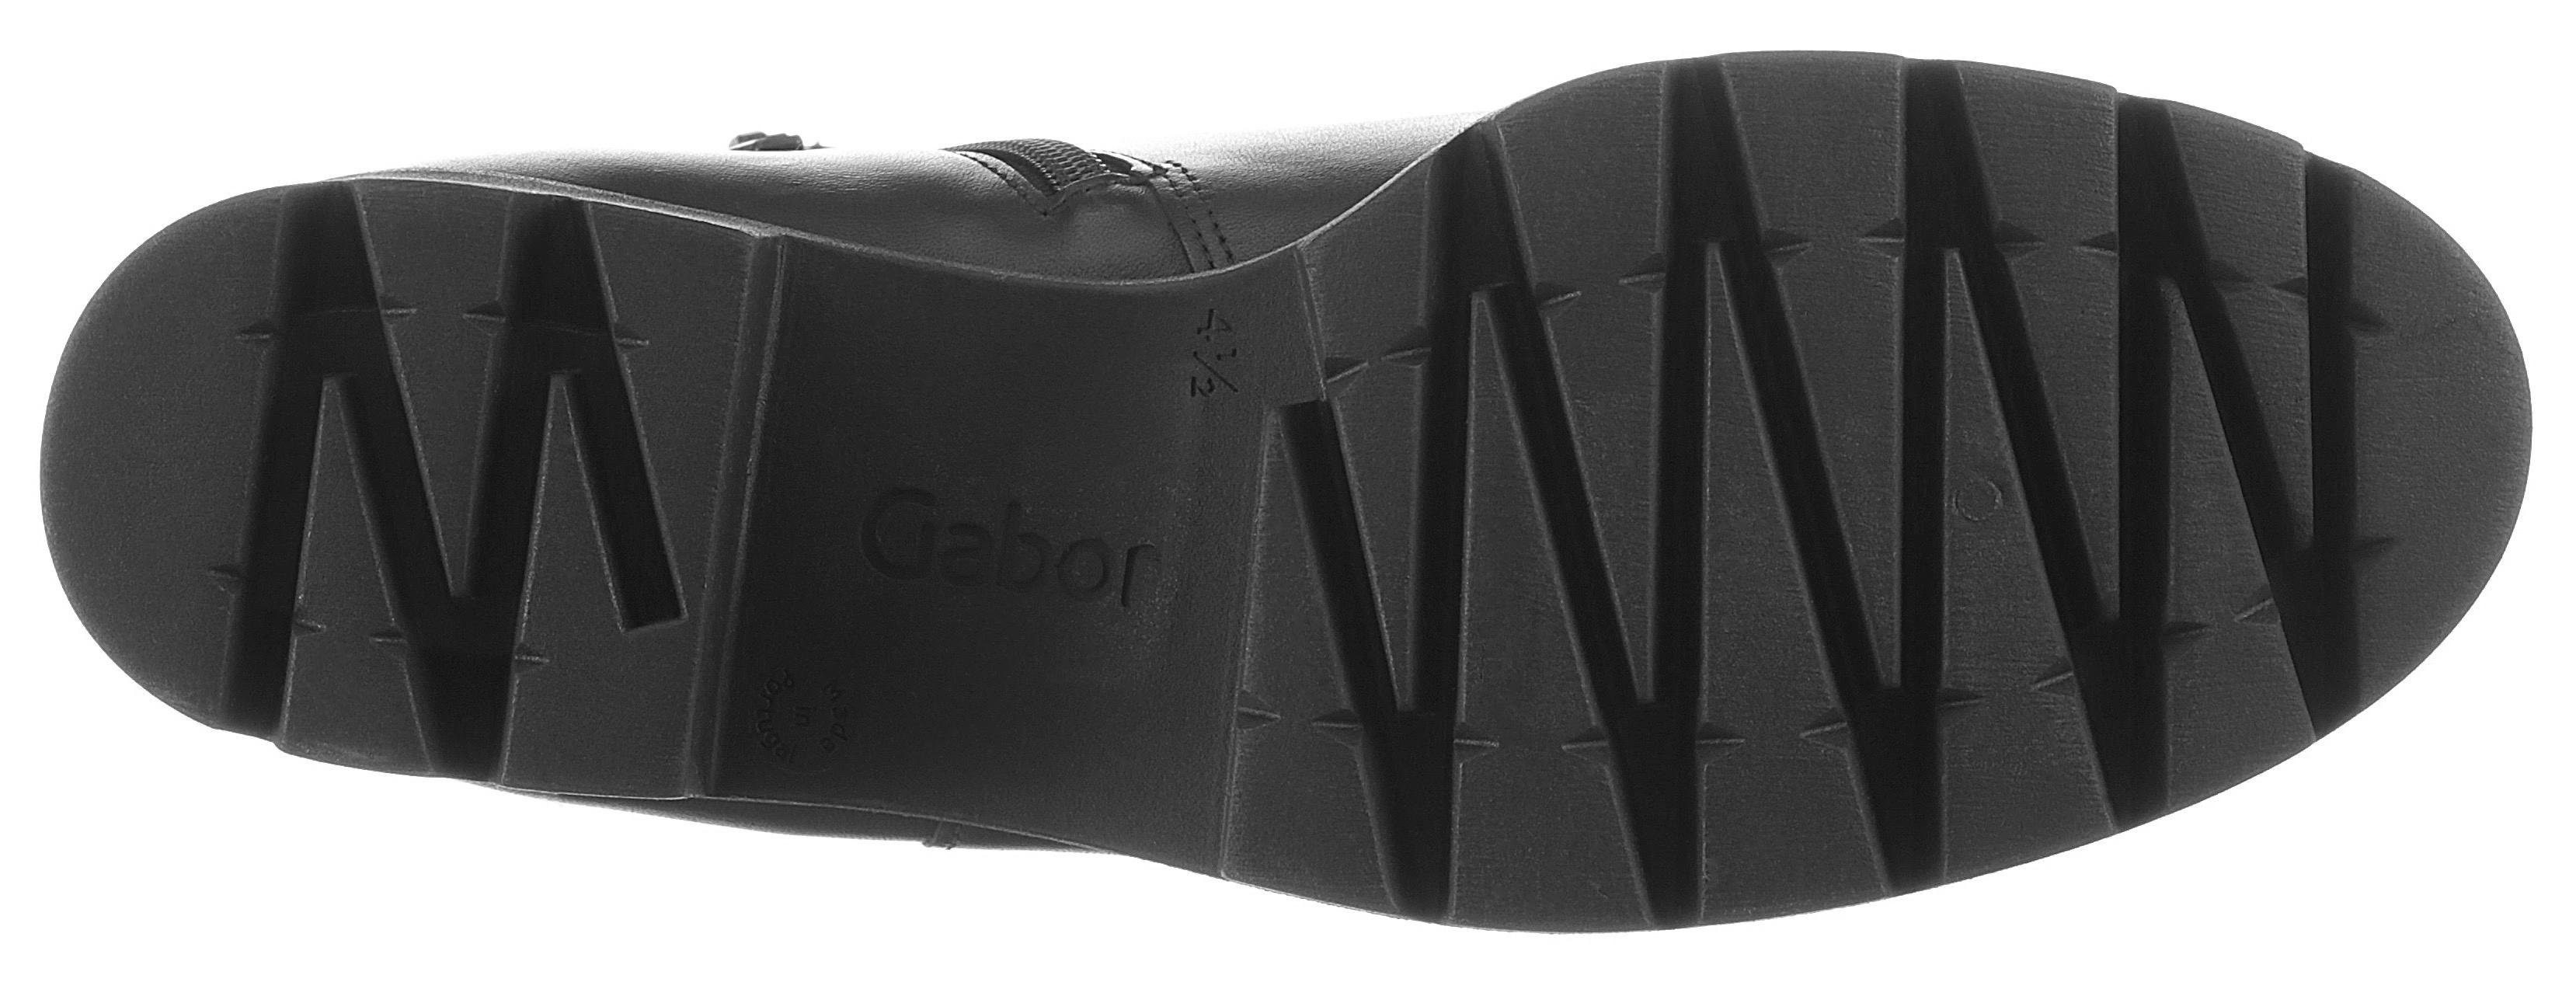 Gabor mit schwarz angesagter Profilsohle Chelseaboots